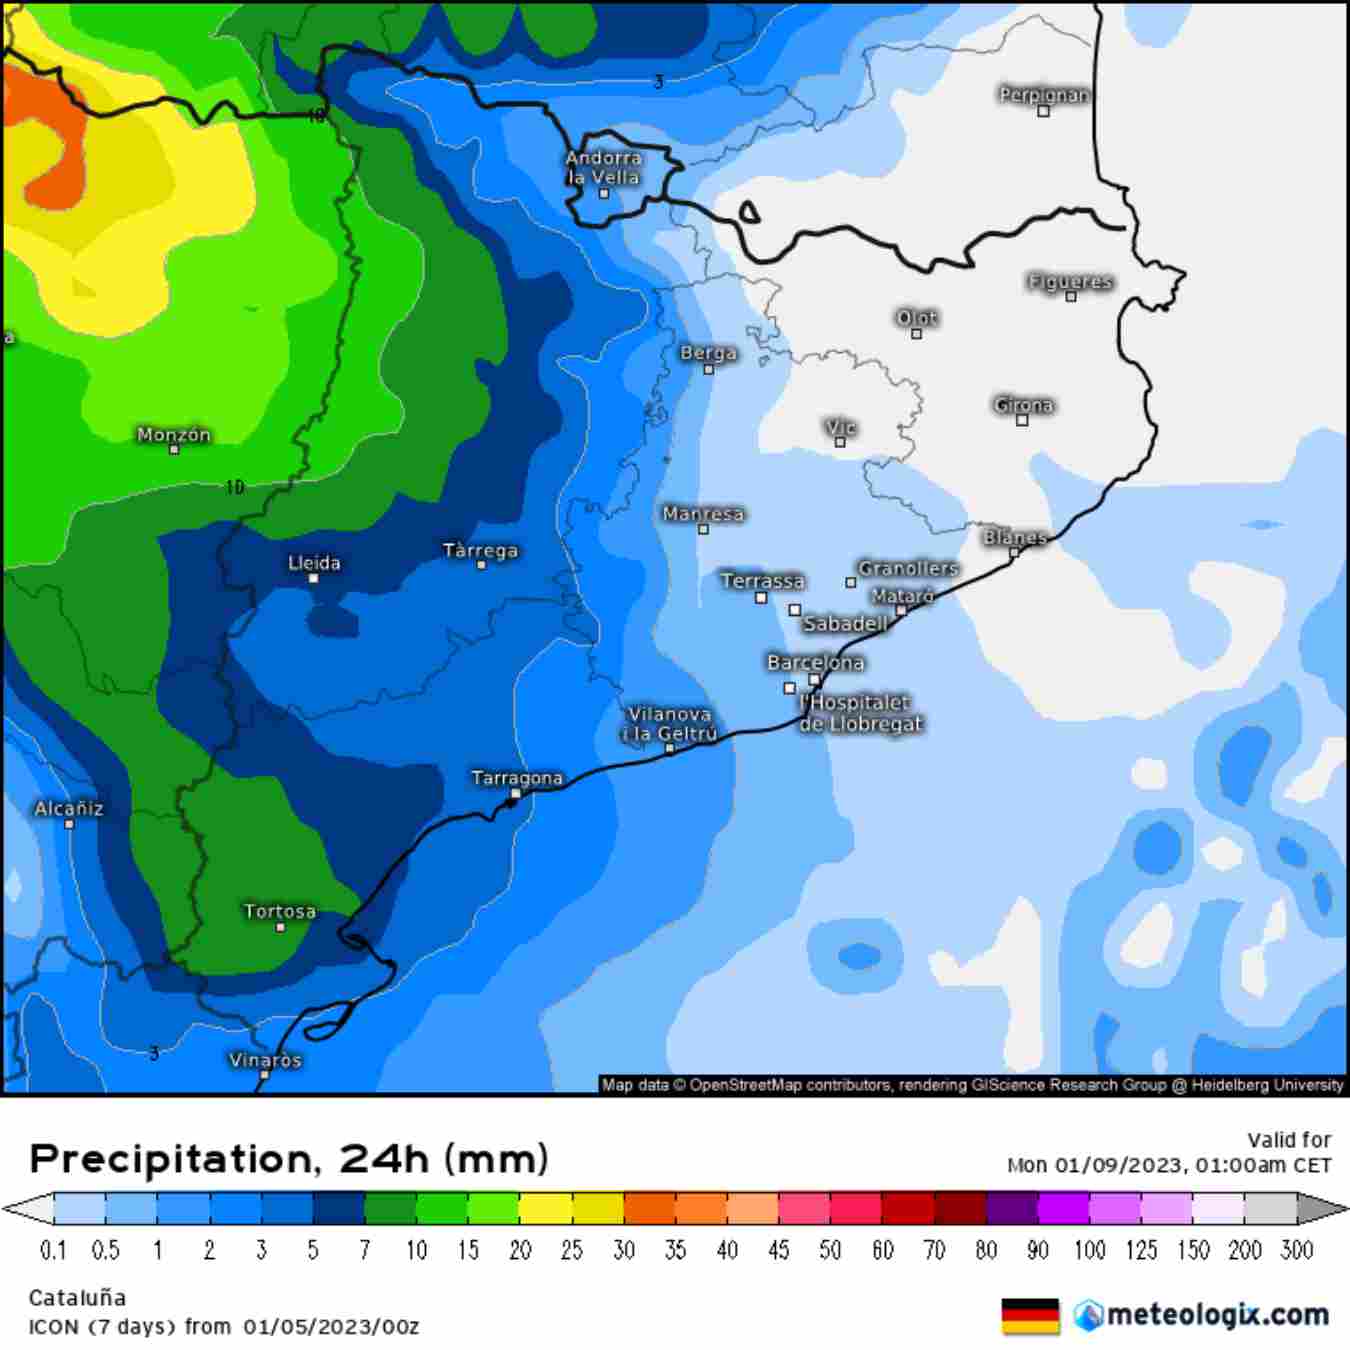 La lluvia del domingo será poca, pero bienvenida la sequía en Catalunya es extrema